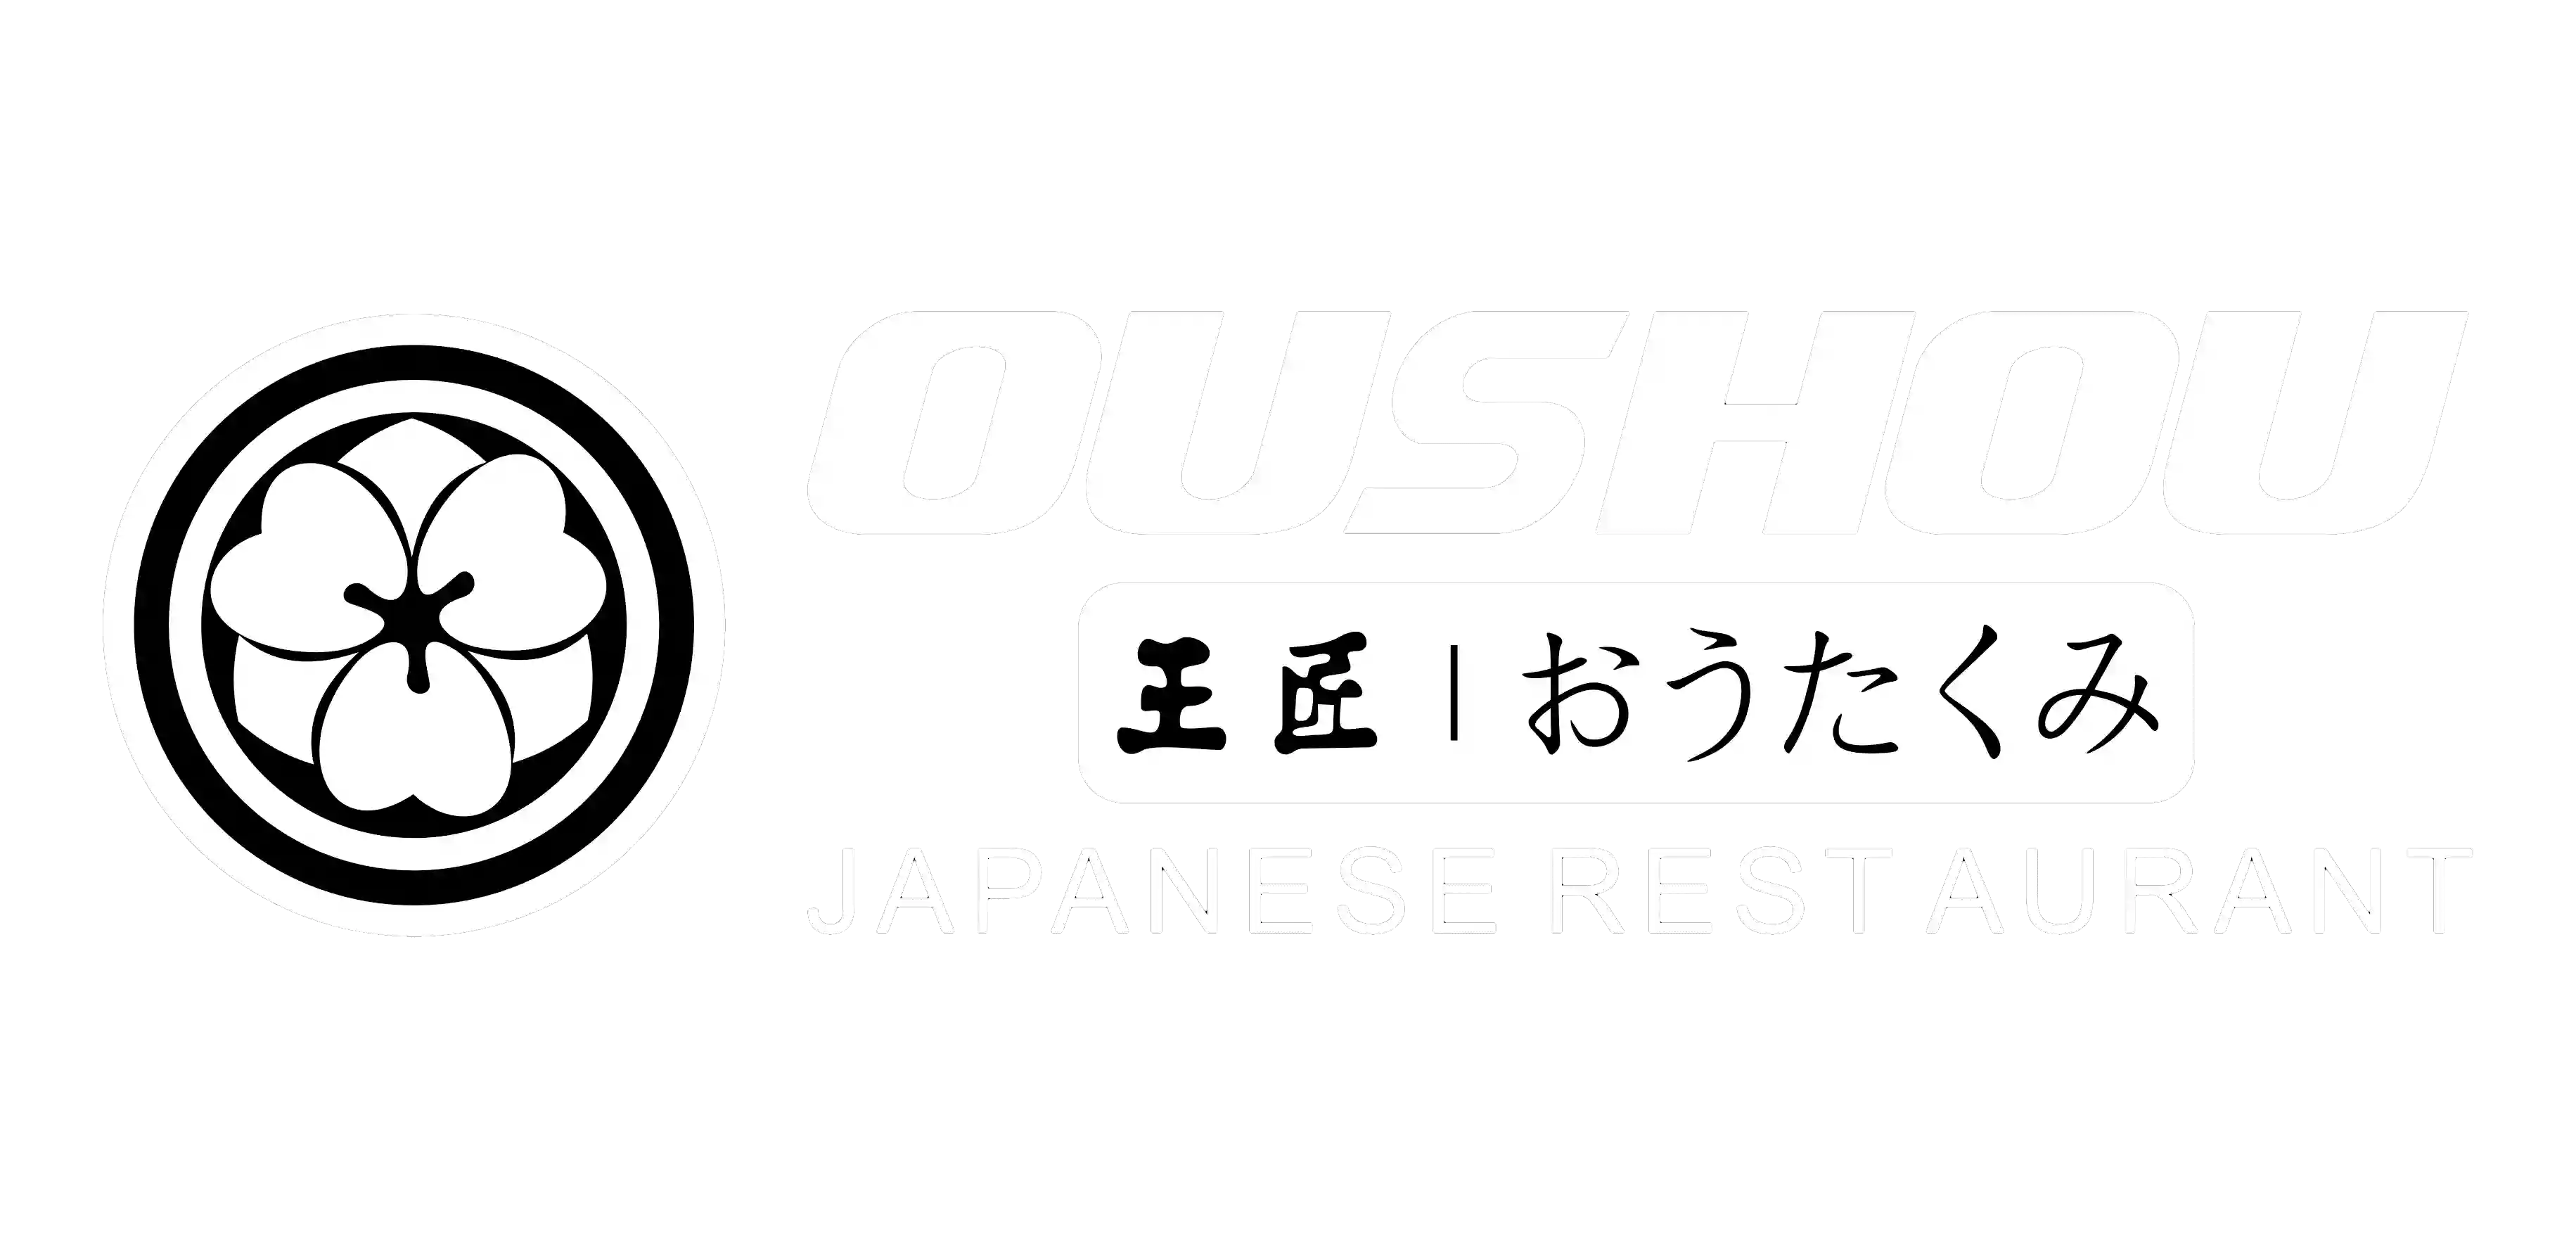 Oushou (Brighton) Japanese Restaurant, Sushi, Sashimi, Sake